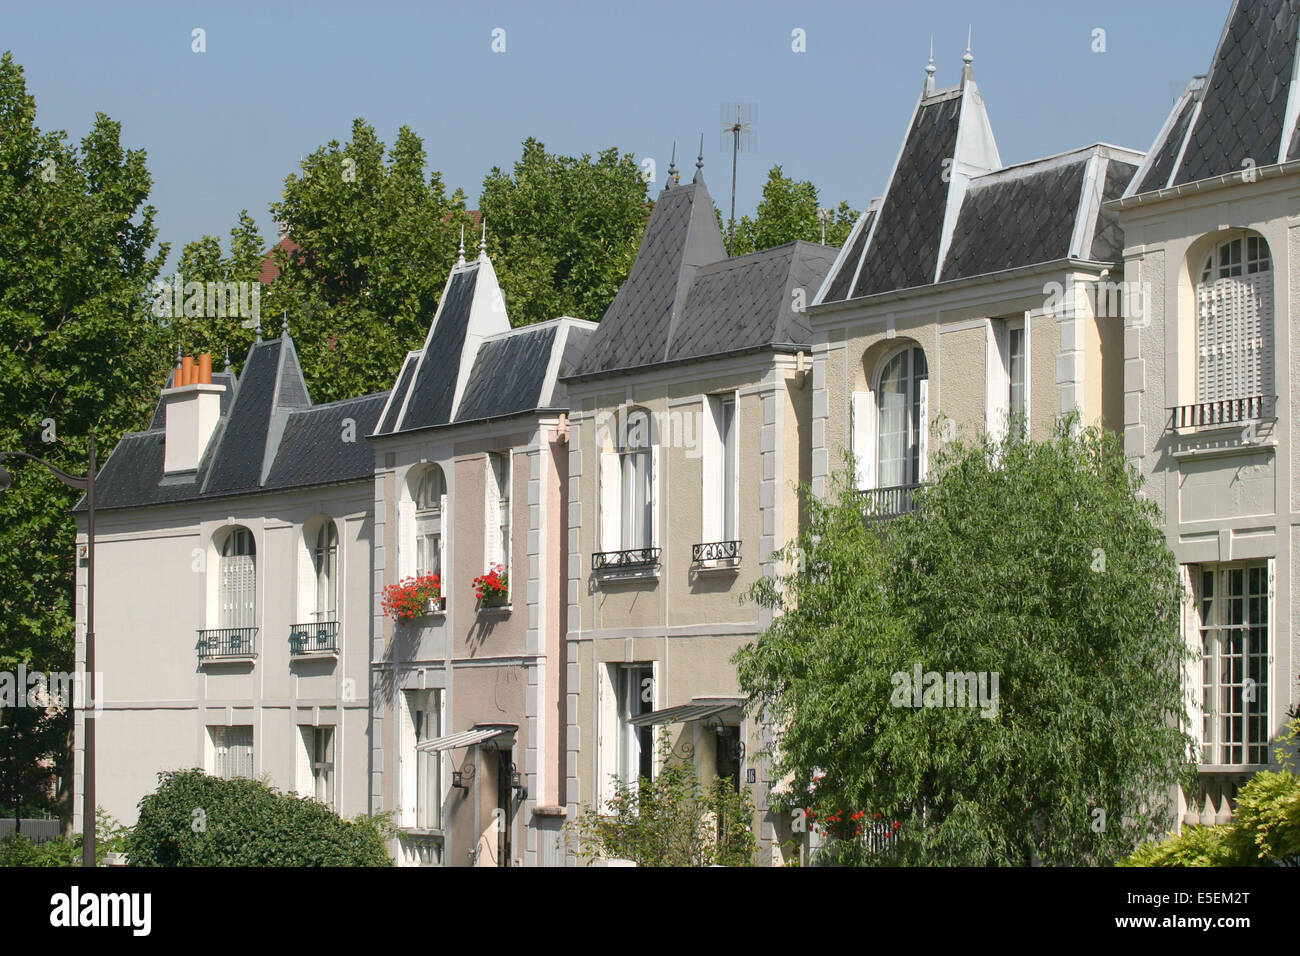 France, paris 13e, maisons rue du Dr Leray, pavillons identiques, toitures en fer de hache, Stock Photo